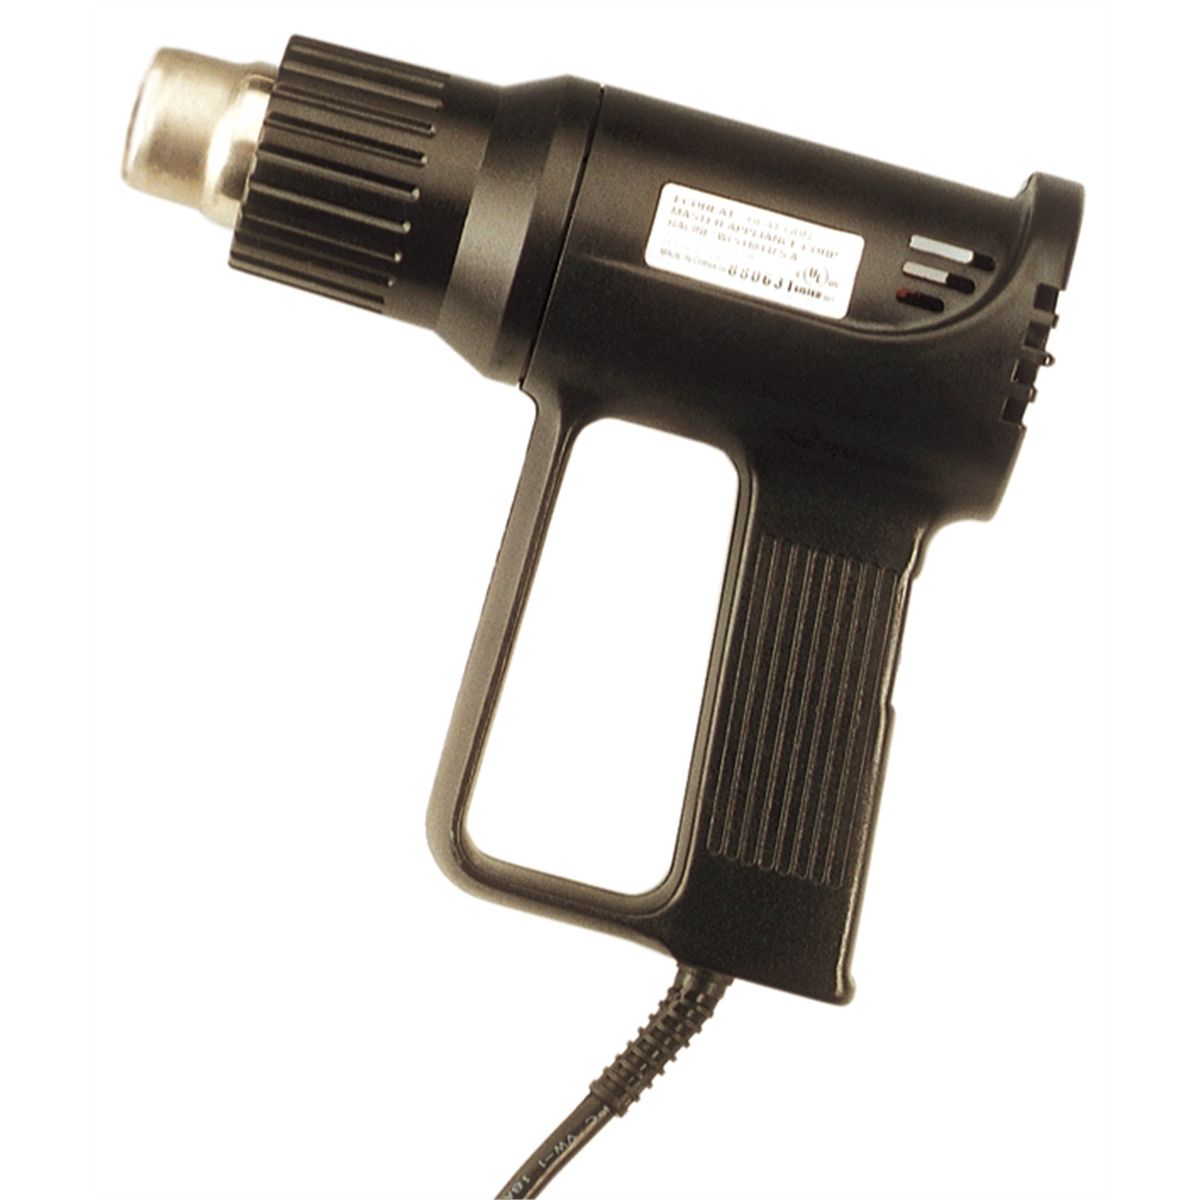 EC-MINI Heat Gun - Master Appliance Heat Tools